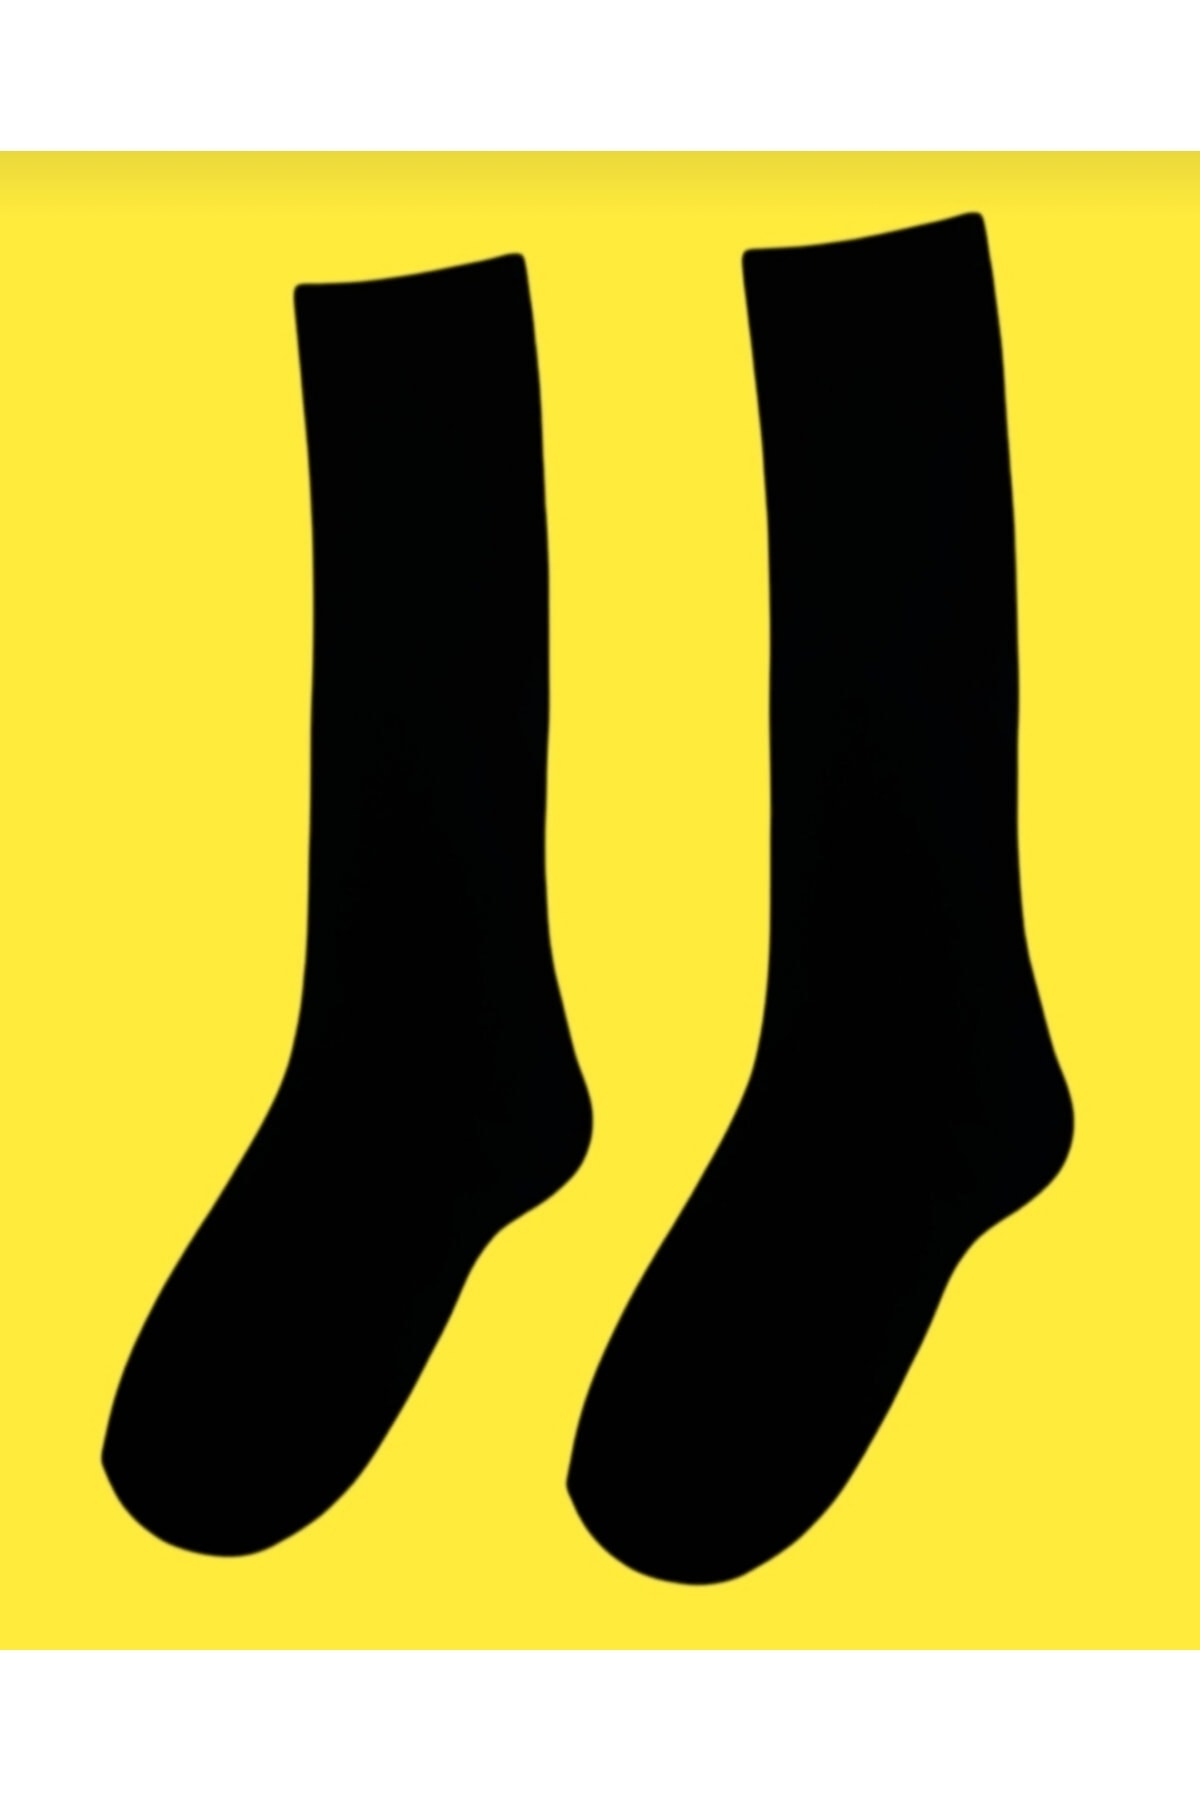 mcy butik 1'çift Unisex Yüksek Kalite Pamuklu Diz Altı Çorap